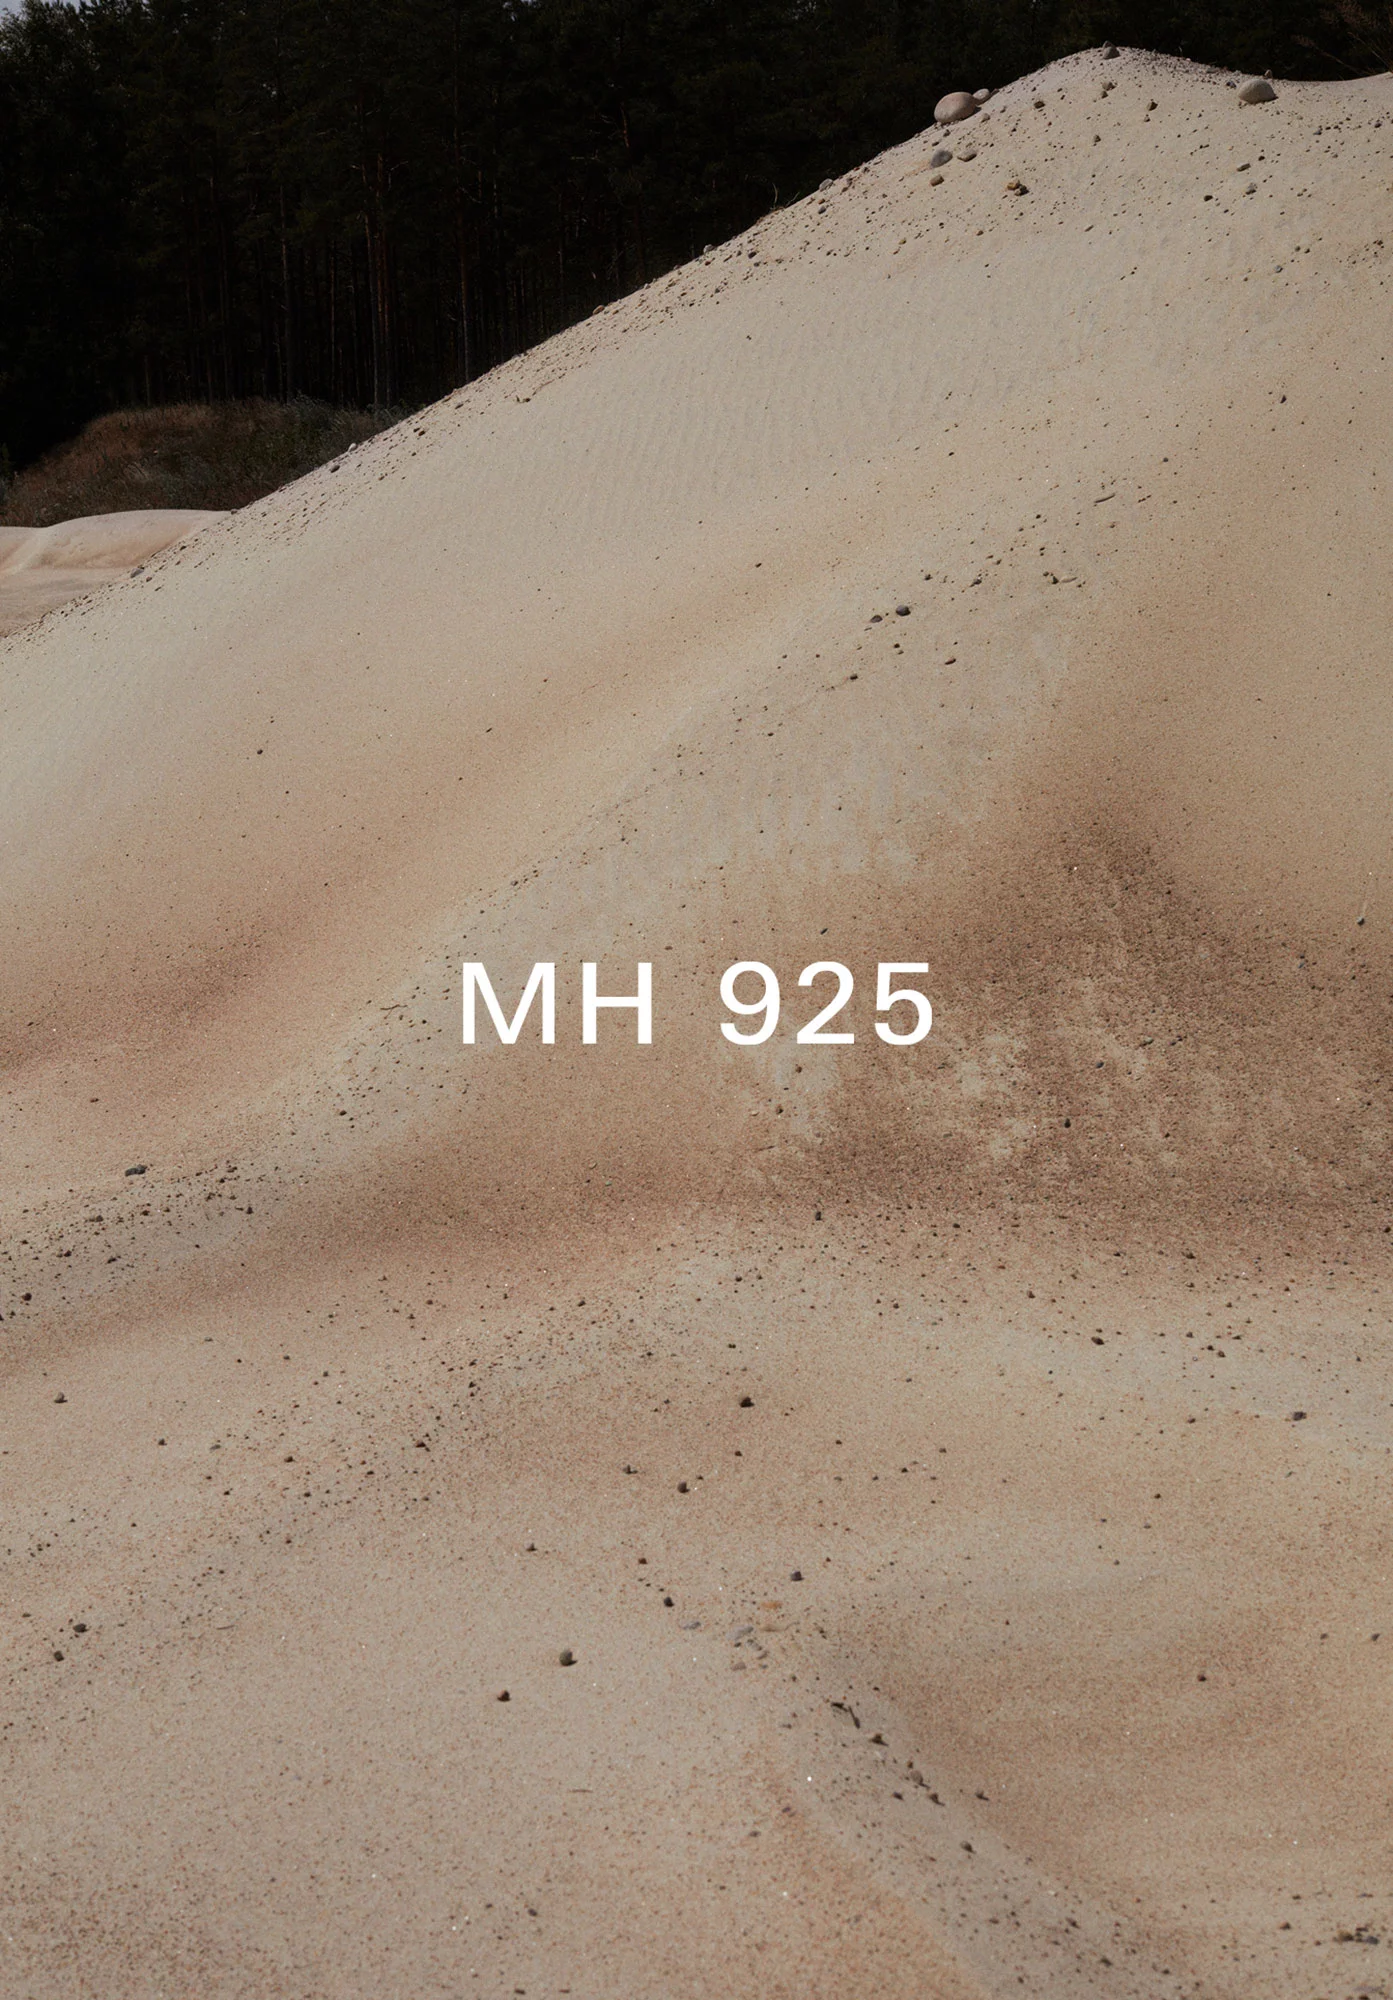 MH 925 3 by Rickard SUND